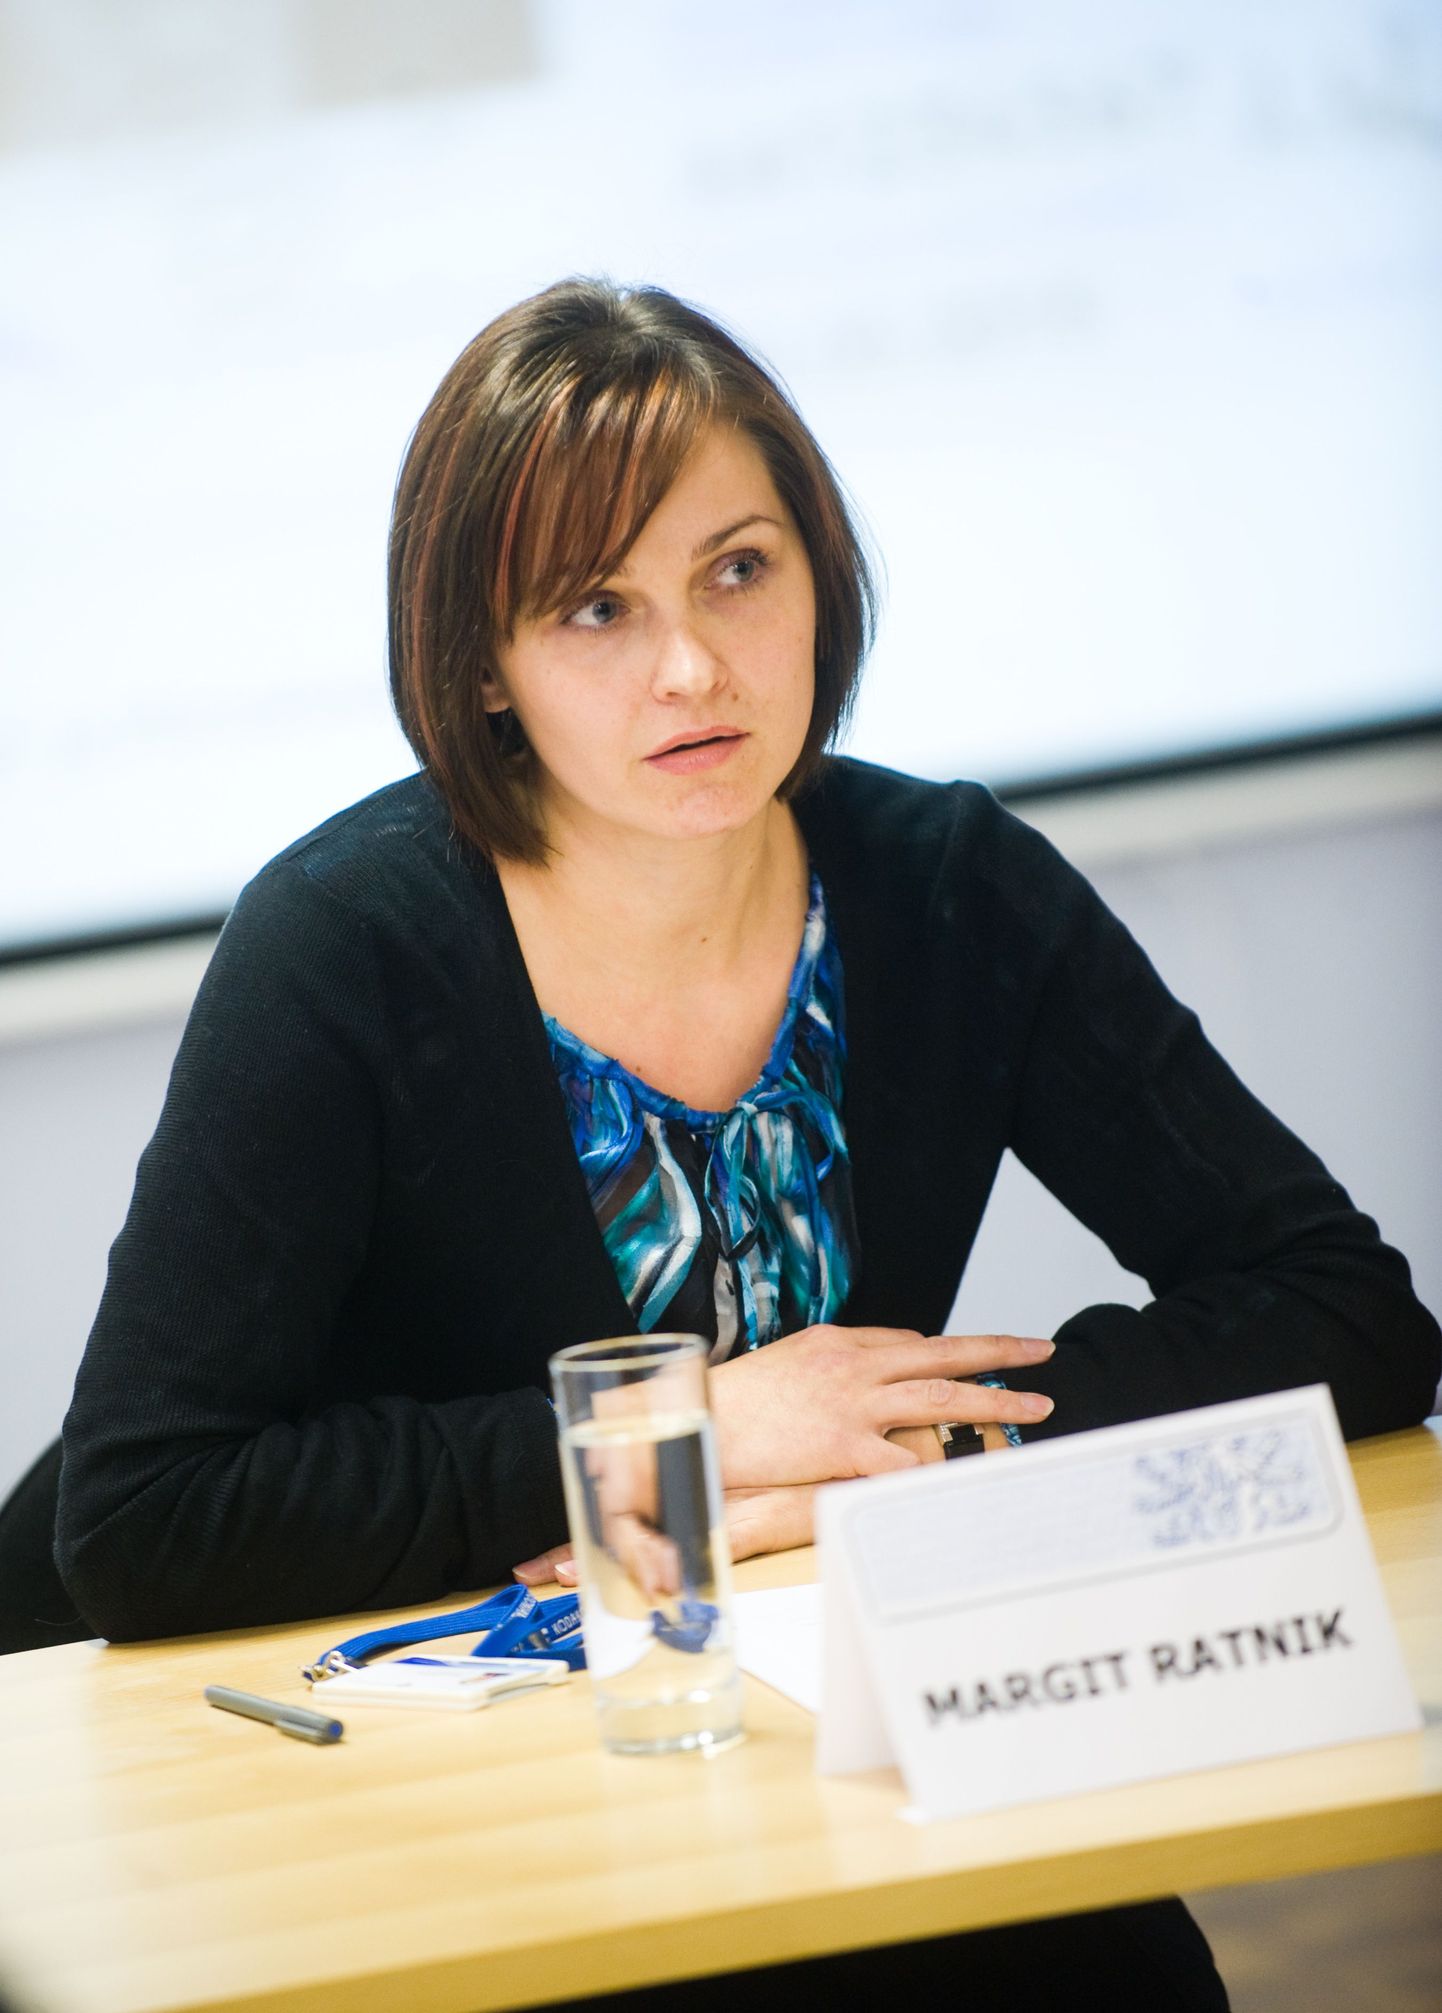 Margit Ratnik